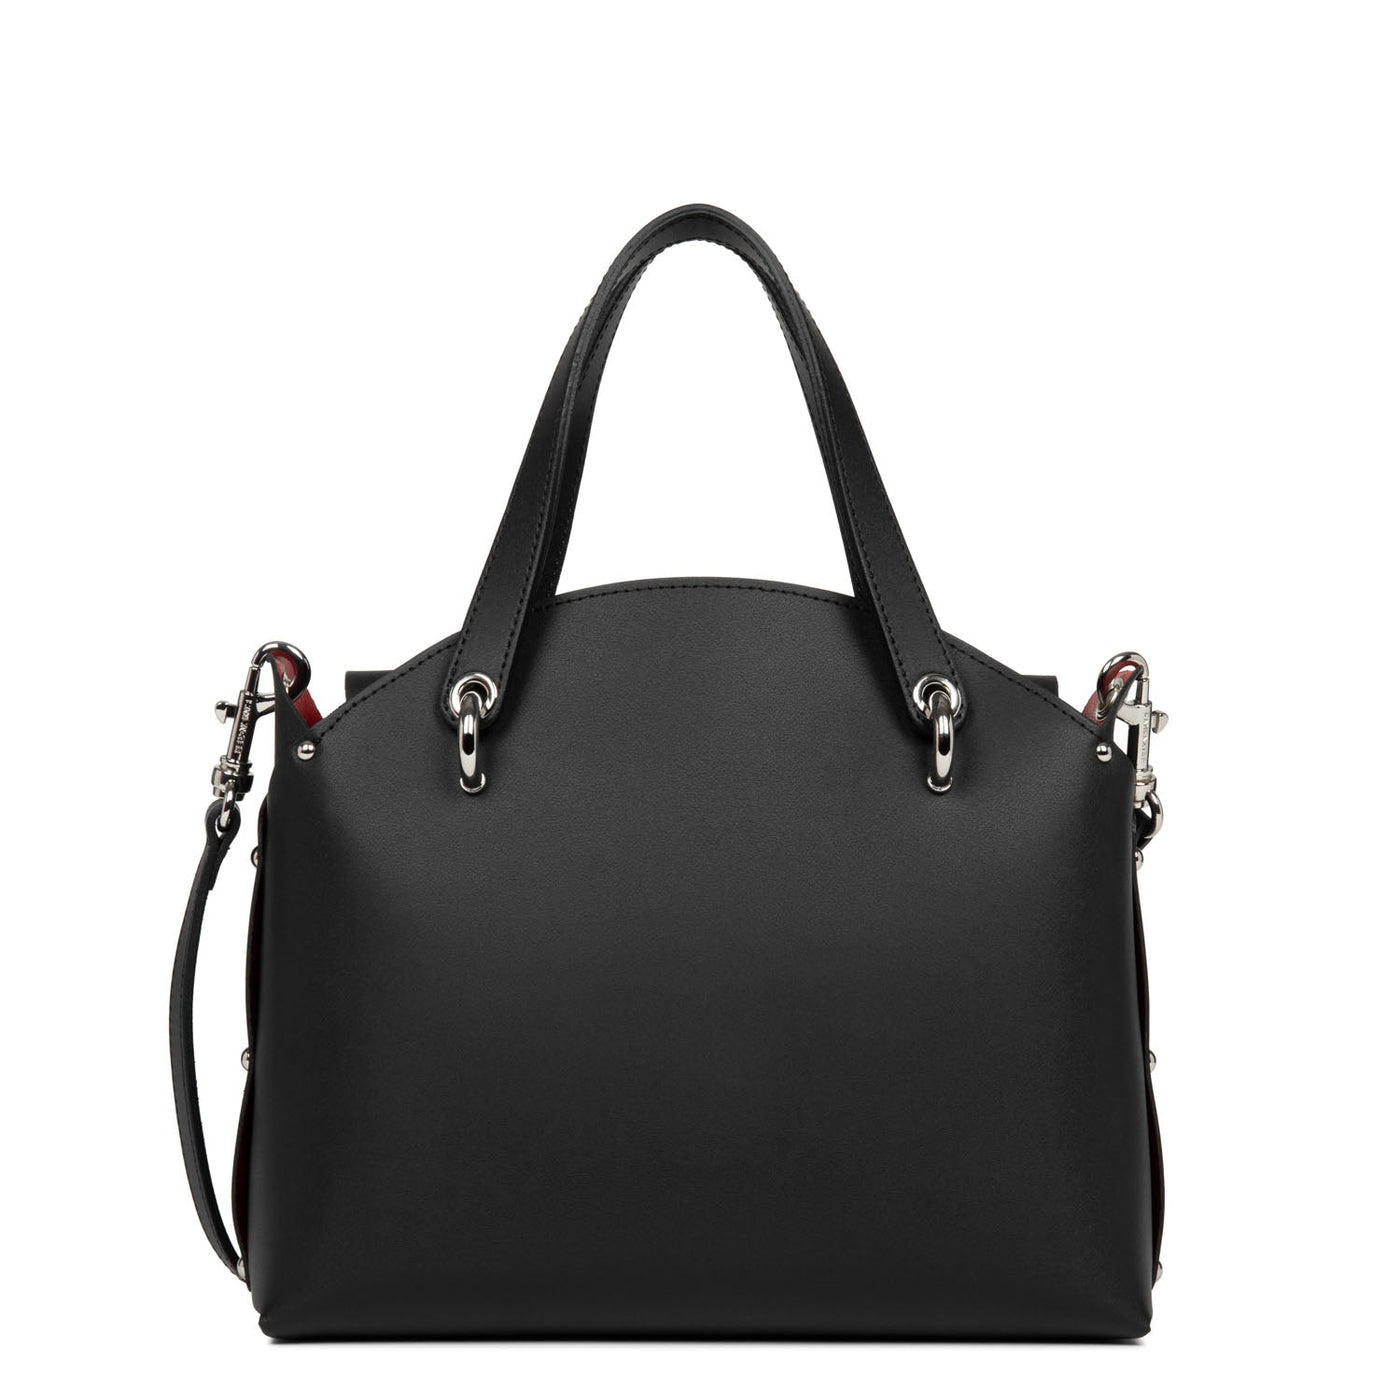 handbag - city flore #couleur_noir-in-rouge